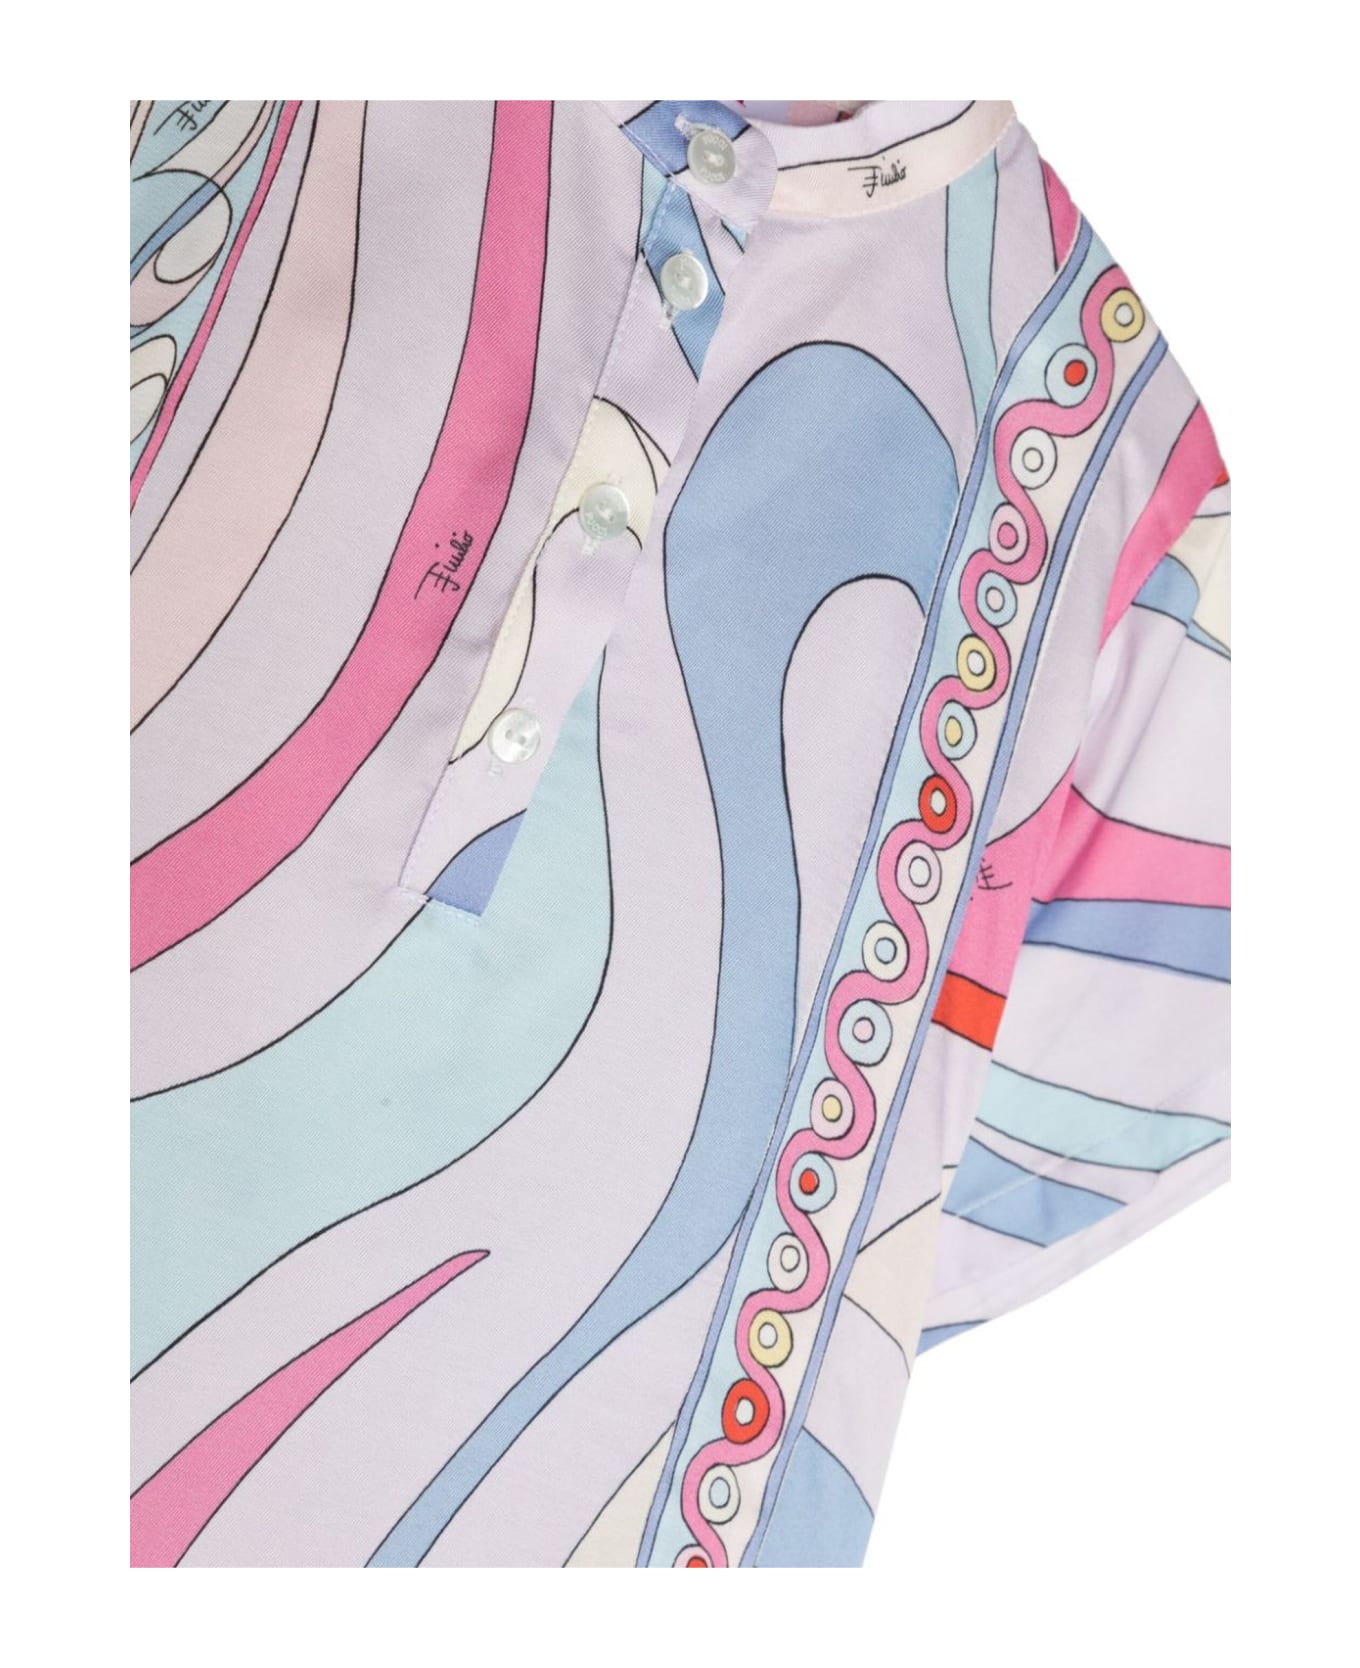 Pucci Emilio Pucci Shirts Multicolour - MultiColour